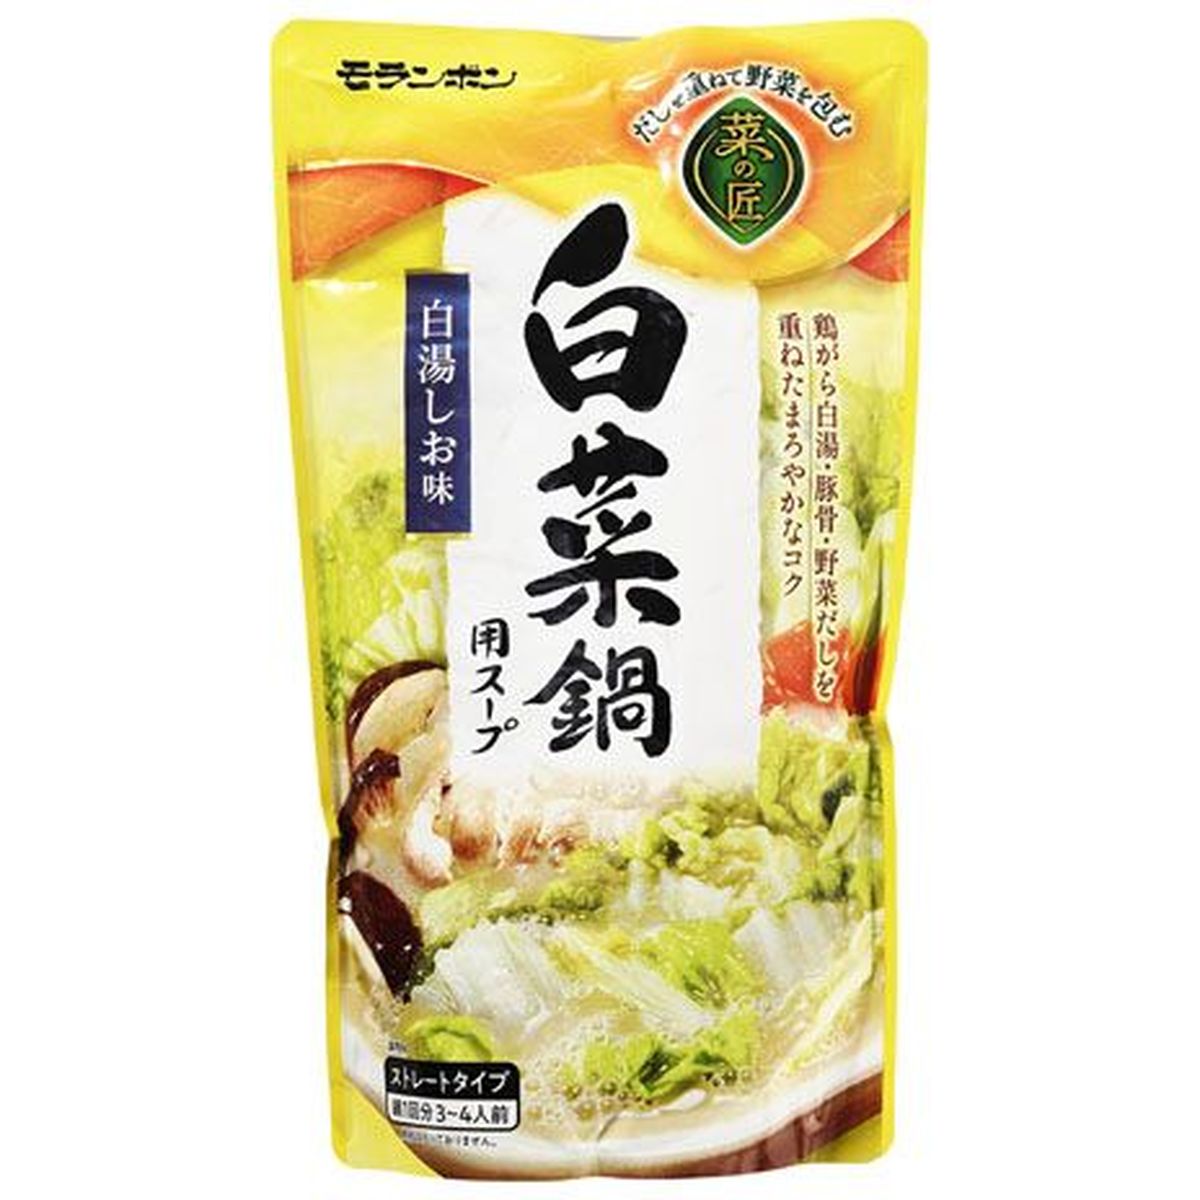 【10個入リ】モランボン 菜ノ匠 白菜鍋用スープ 750g